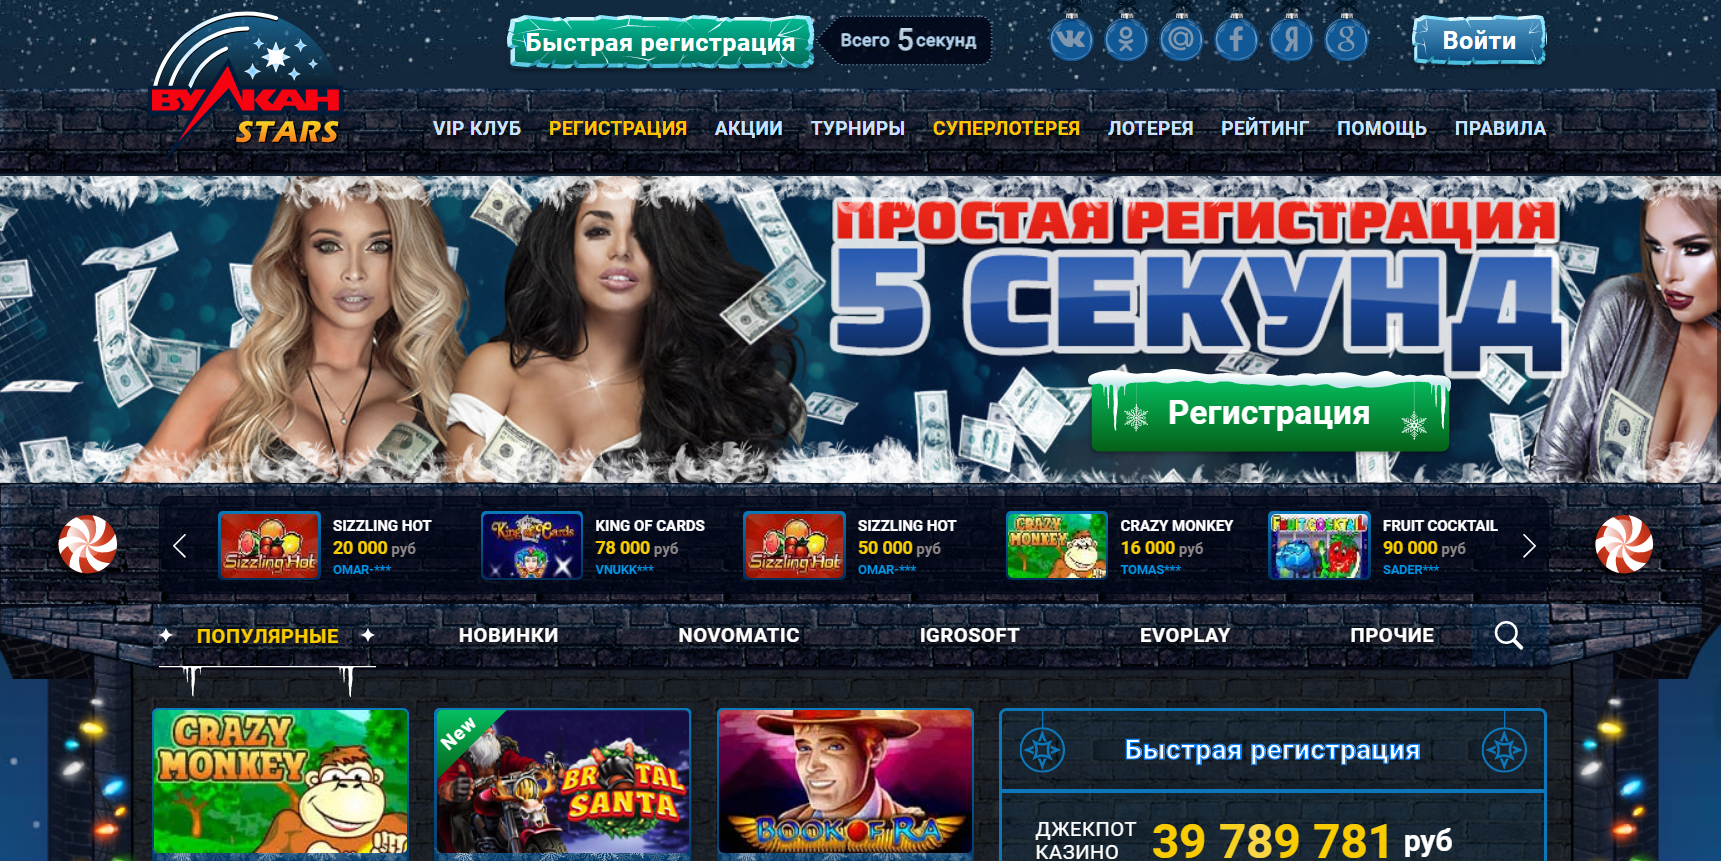 Обзор онлайн казино vulkan stars cash explosion игровой автомат